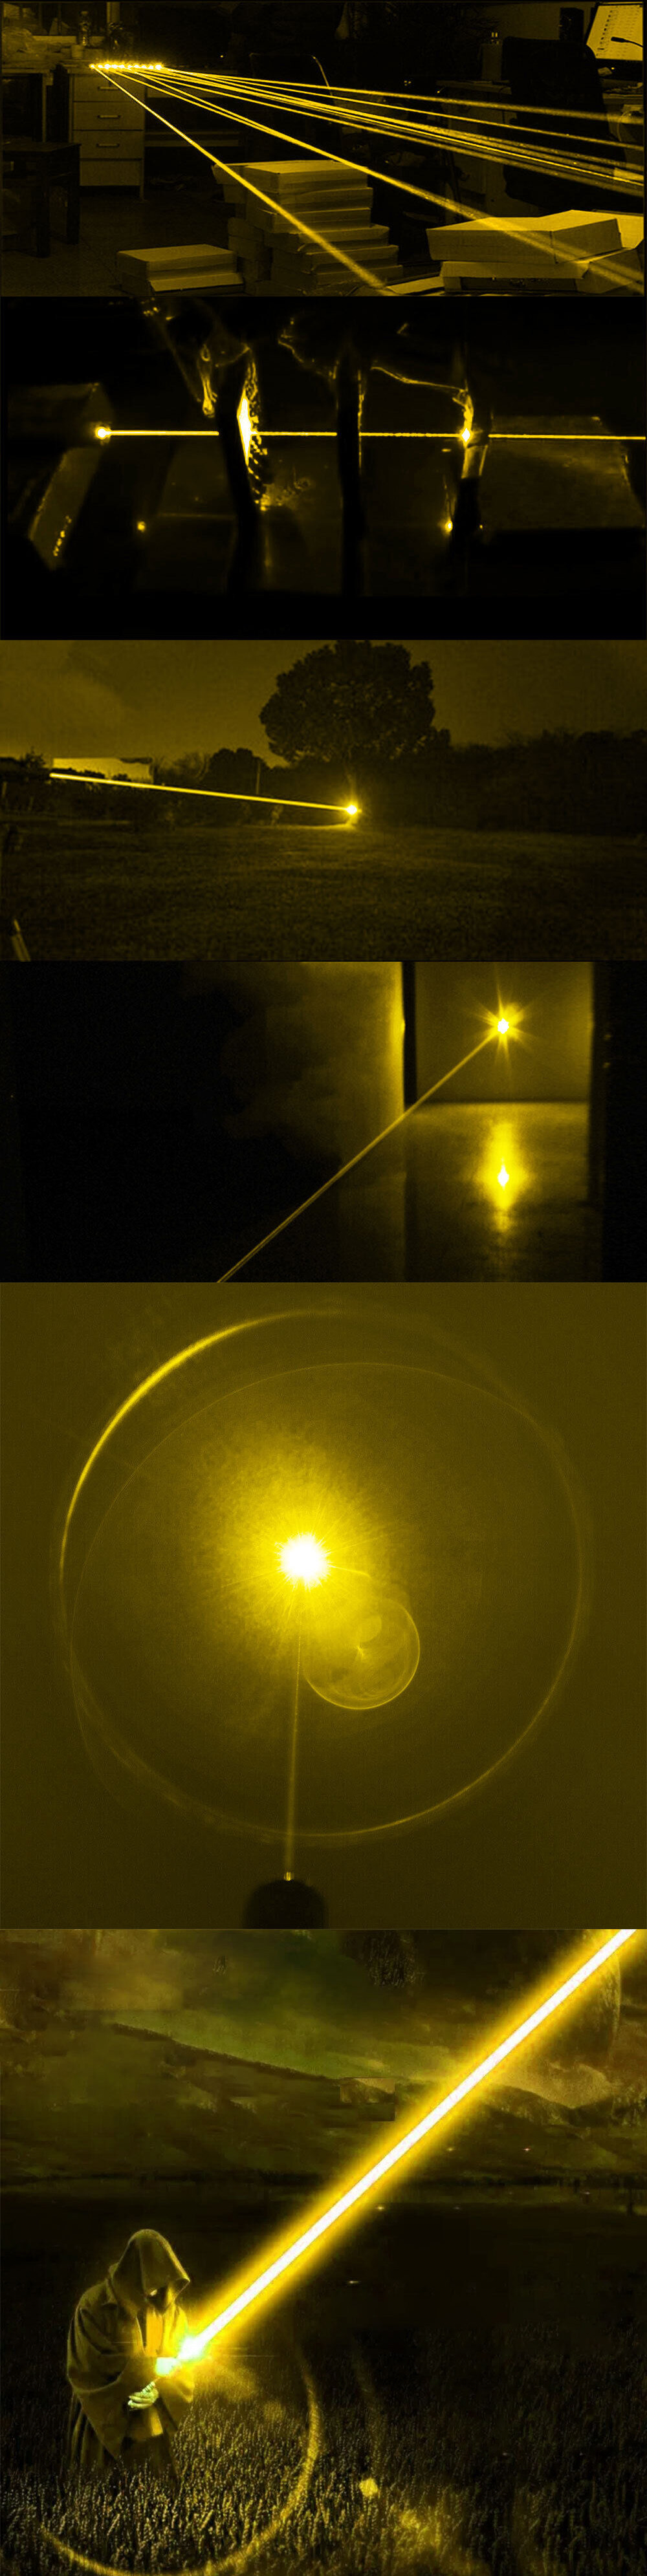 Puntatore laser giallo 590 nm